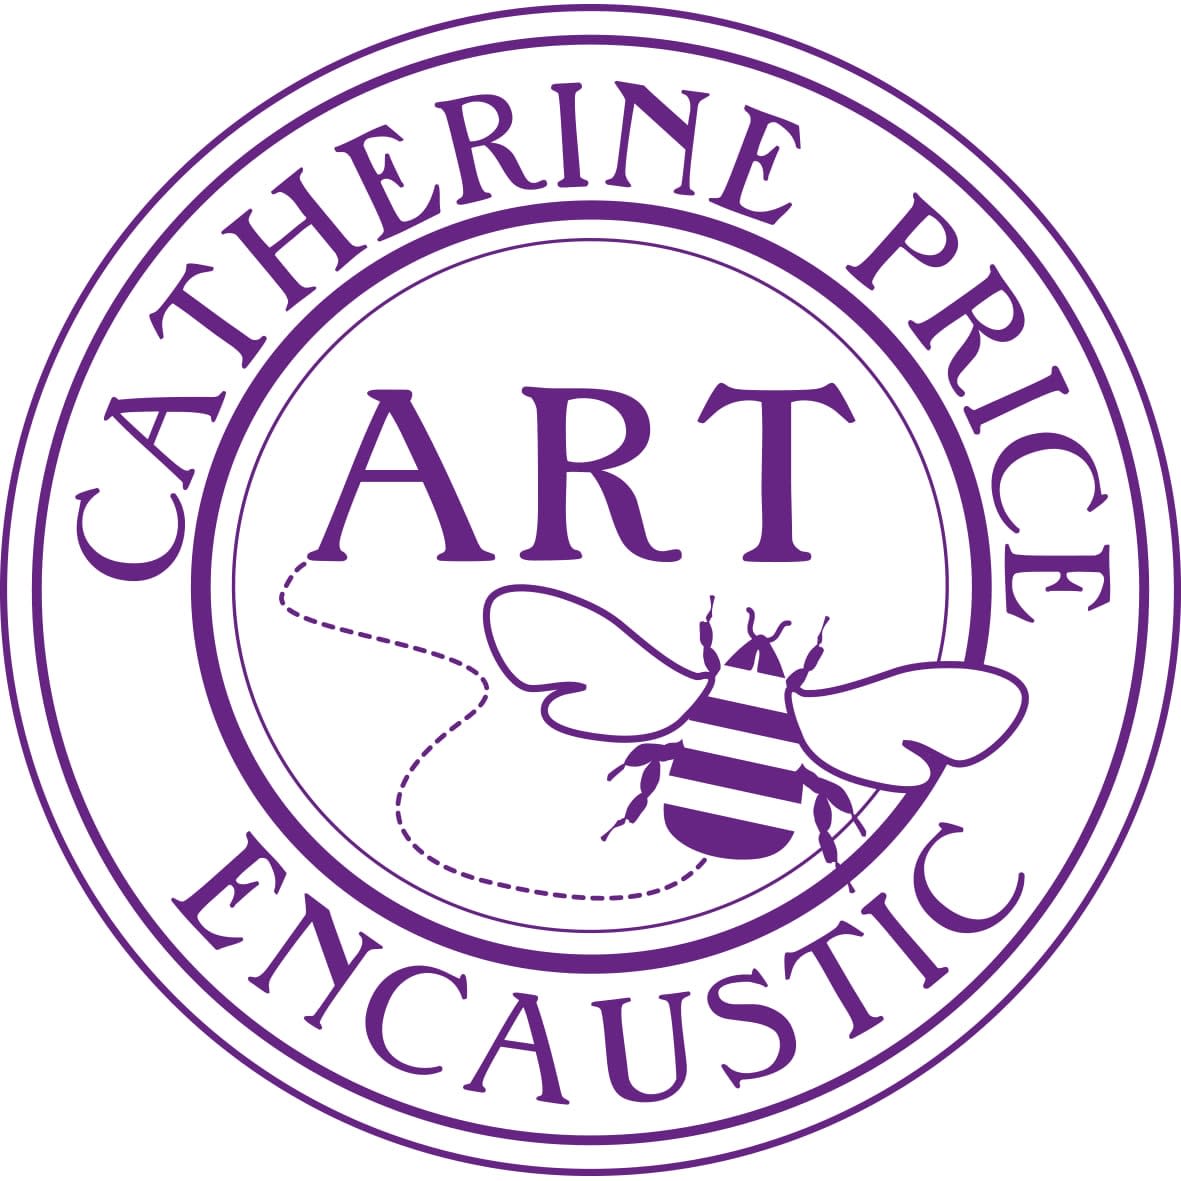 Catherine Price Art